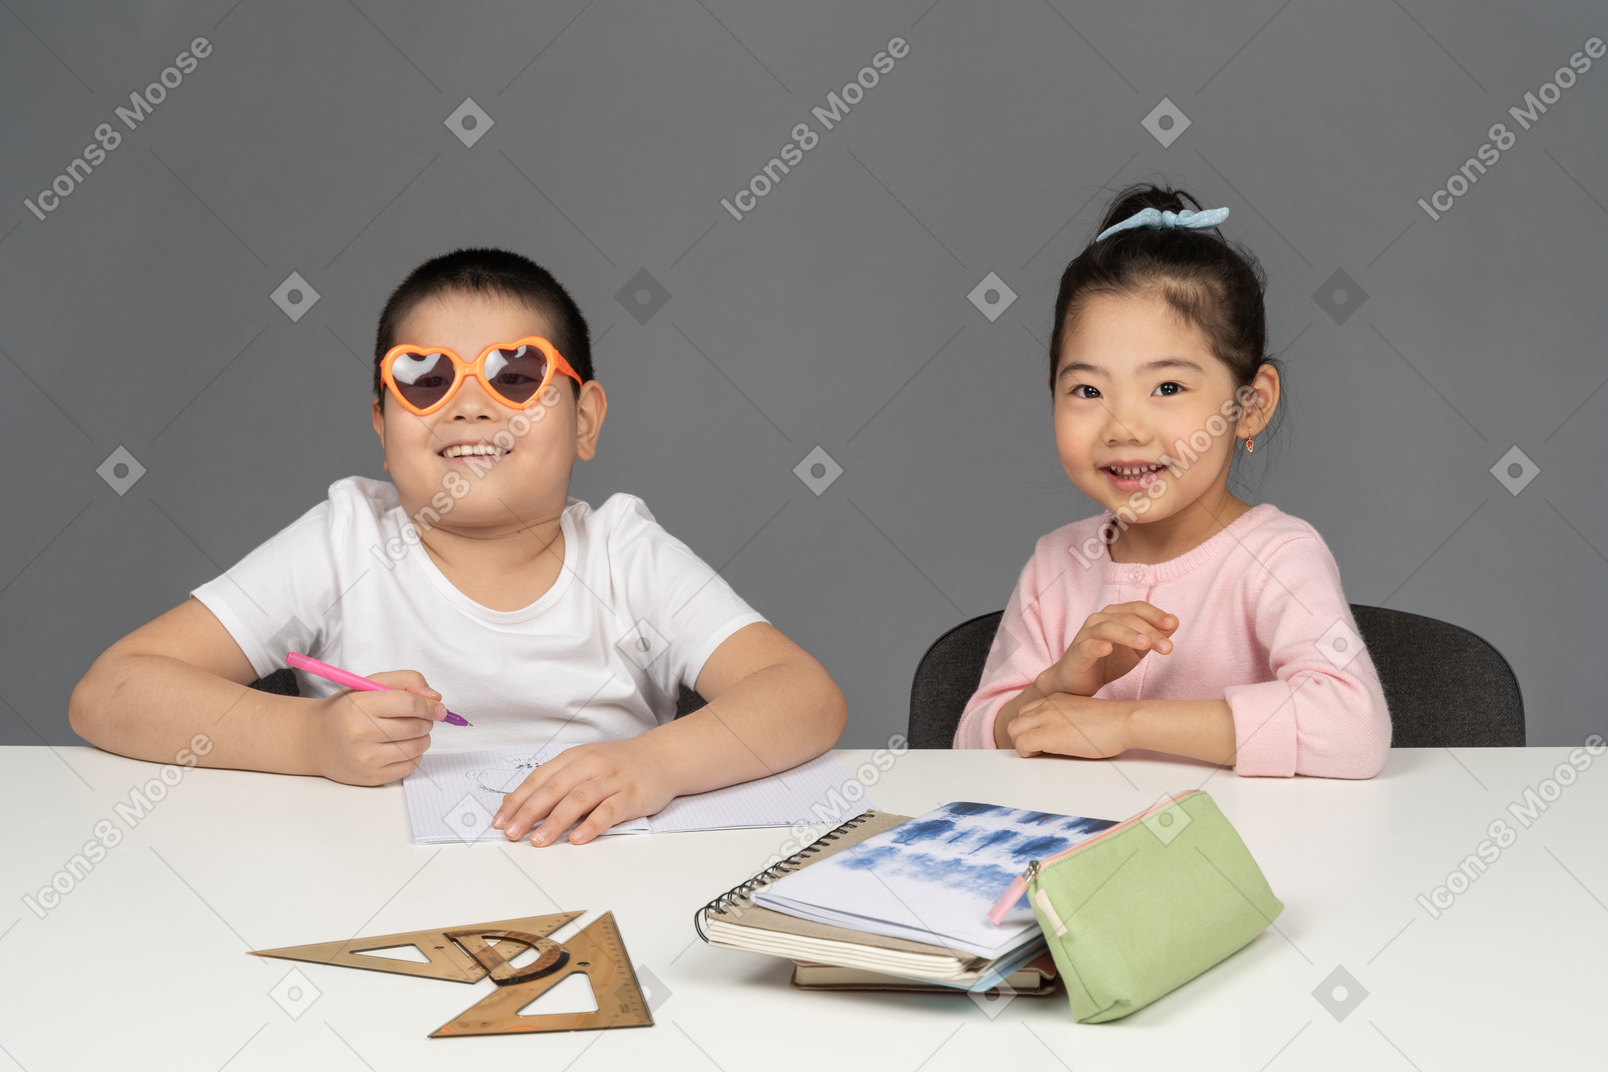 Улыбающаяся девочка и мальчик в солнечных очках